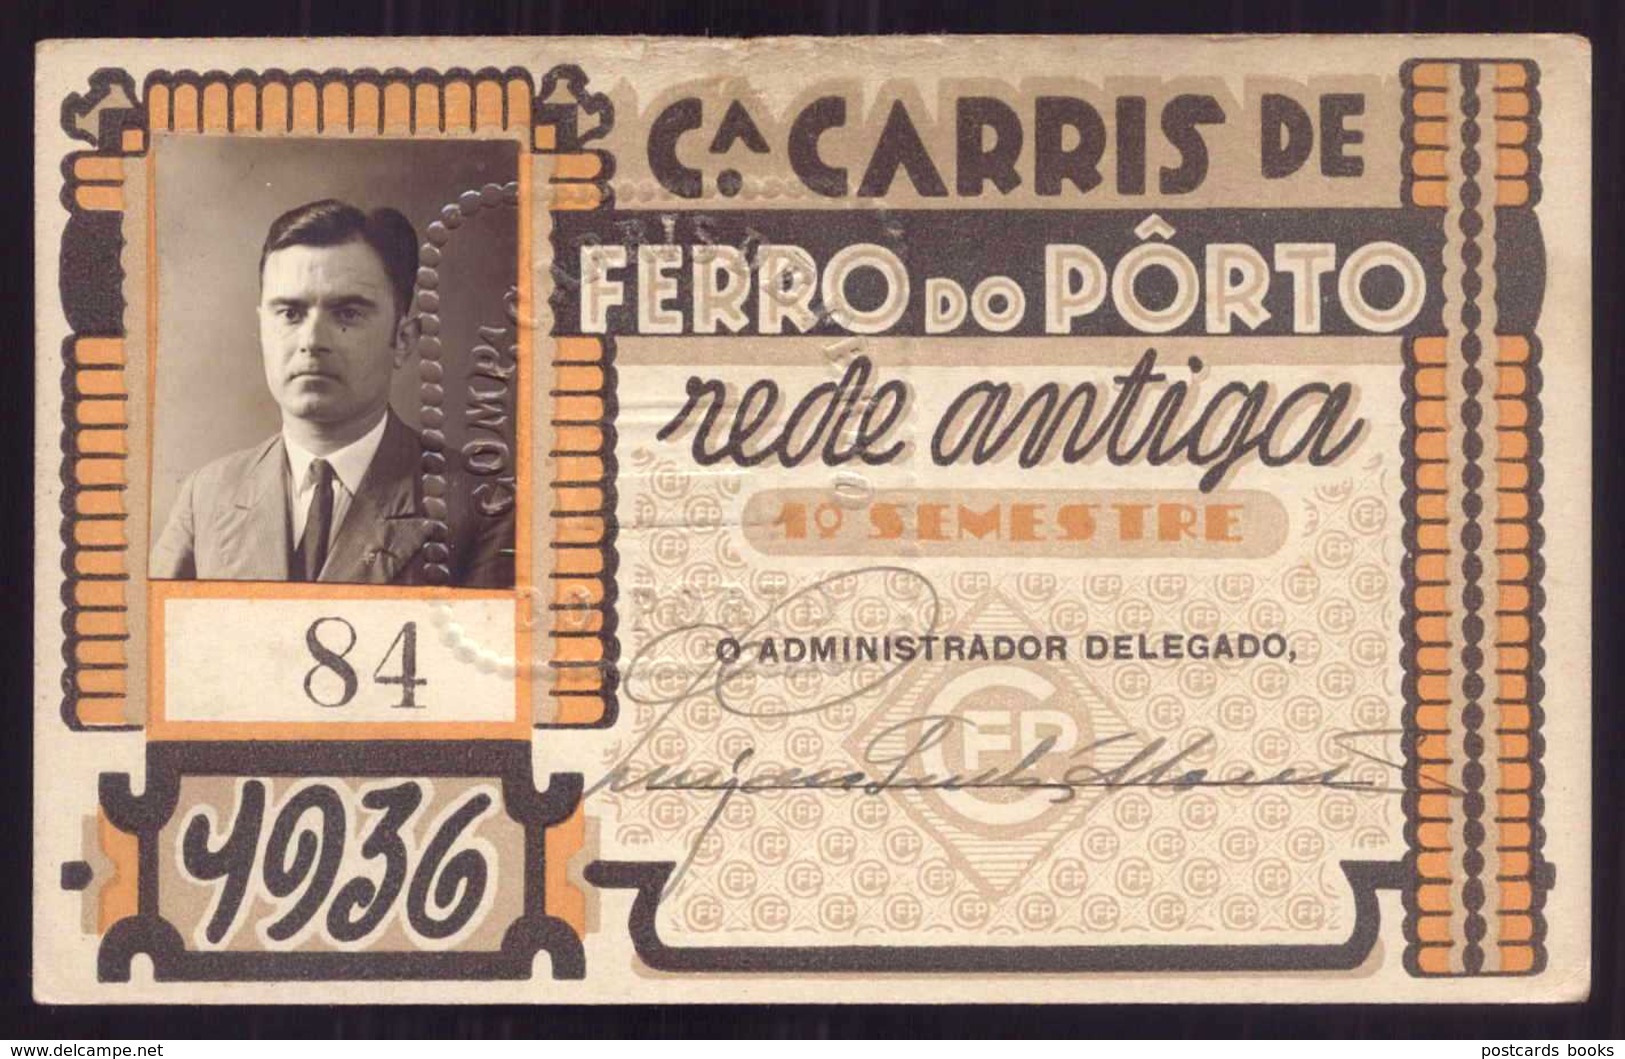 1936 Passe COMPANHIA Cª CARRIS De FERRO Do PORTO Rede Antiga 1º Semestre De 1936. Pass Ticket TRAM Portugal - Europe